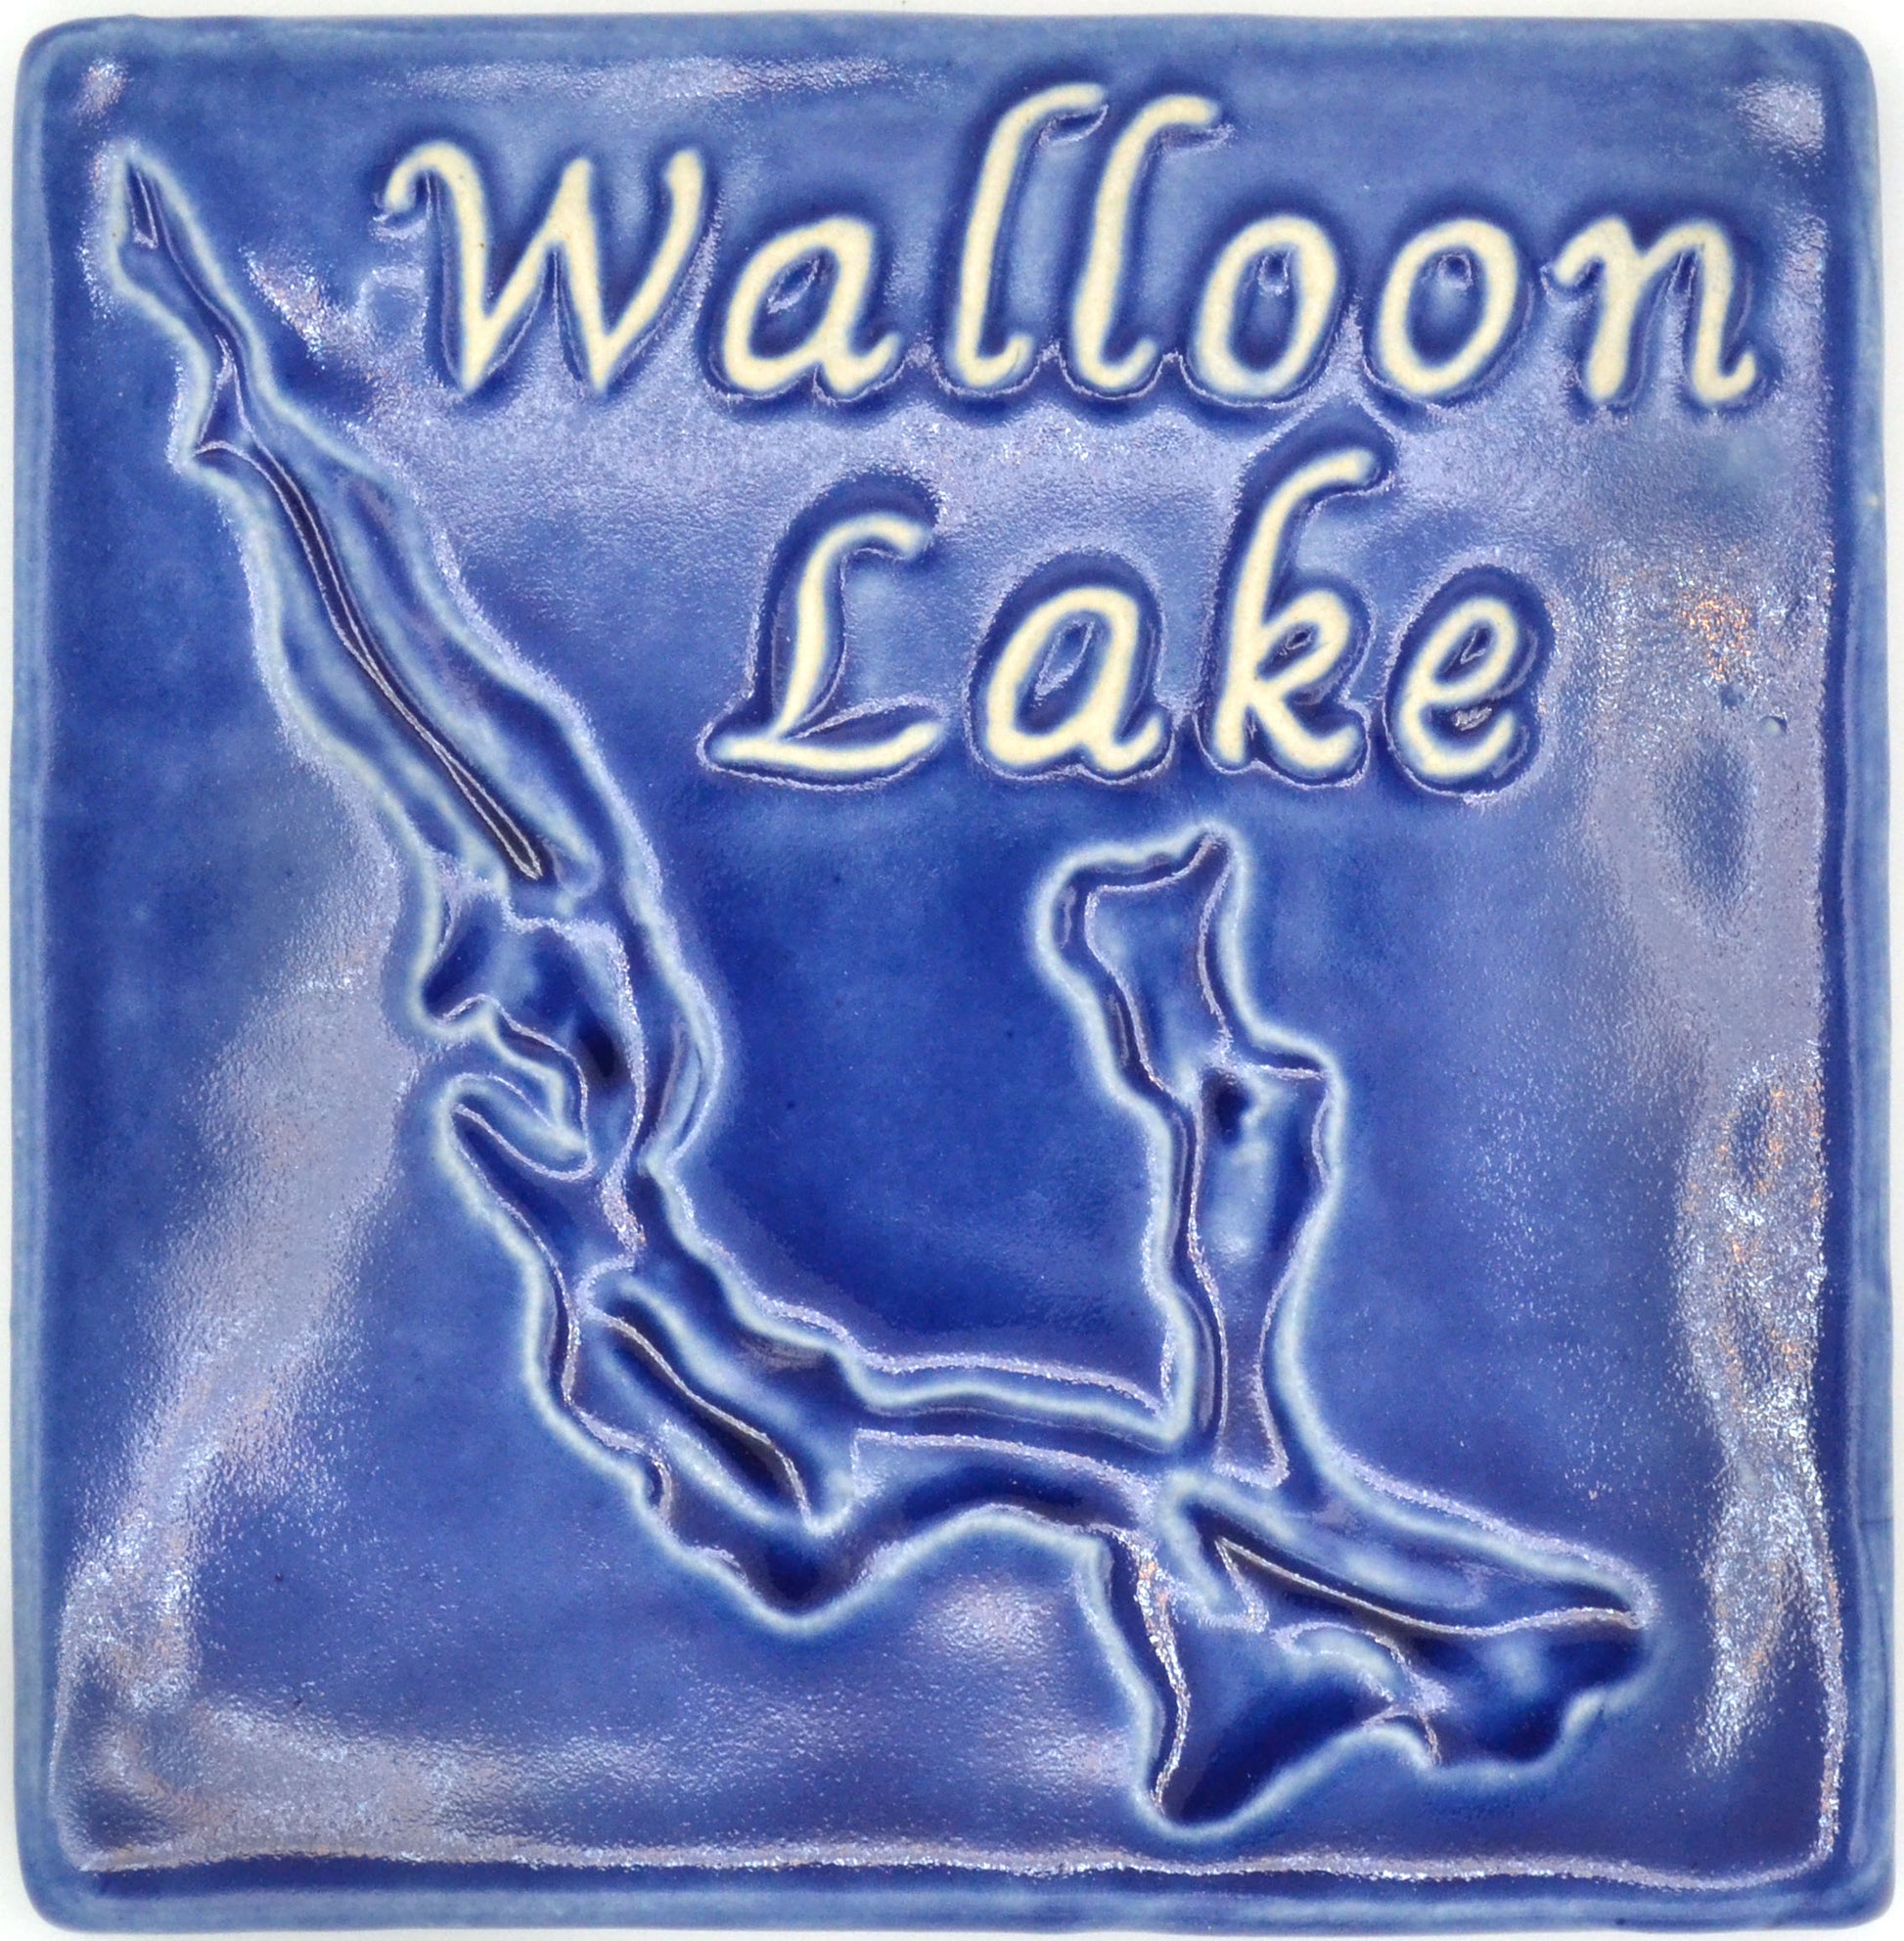 6x6 walloon lake tile blue